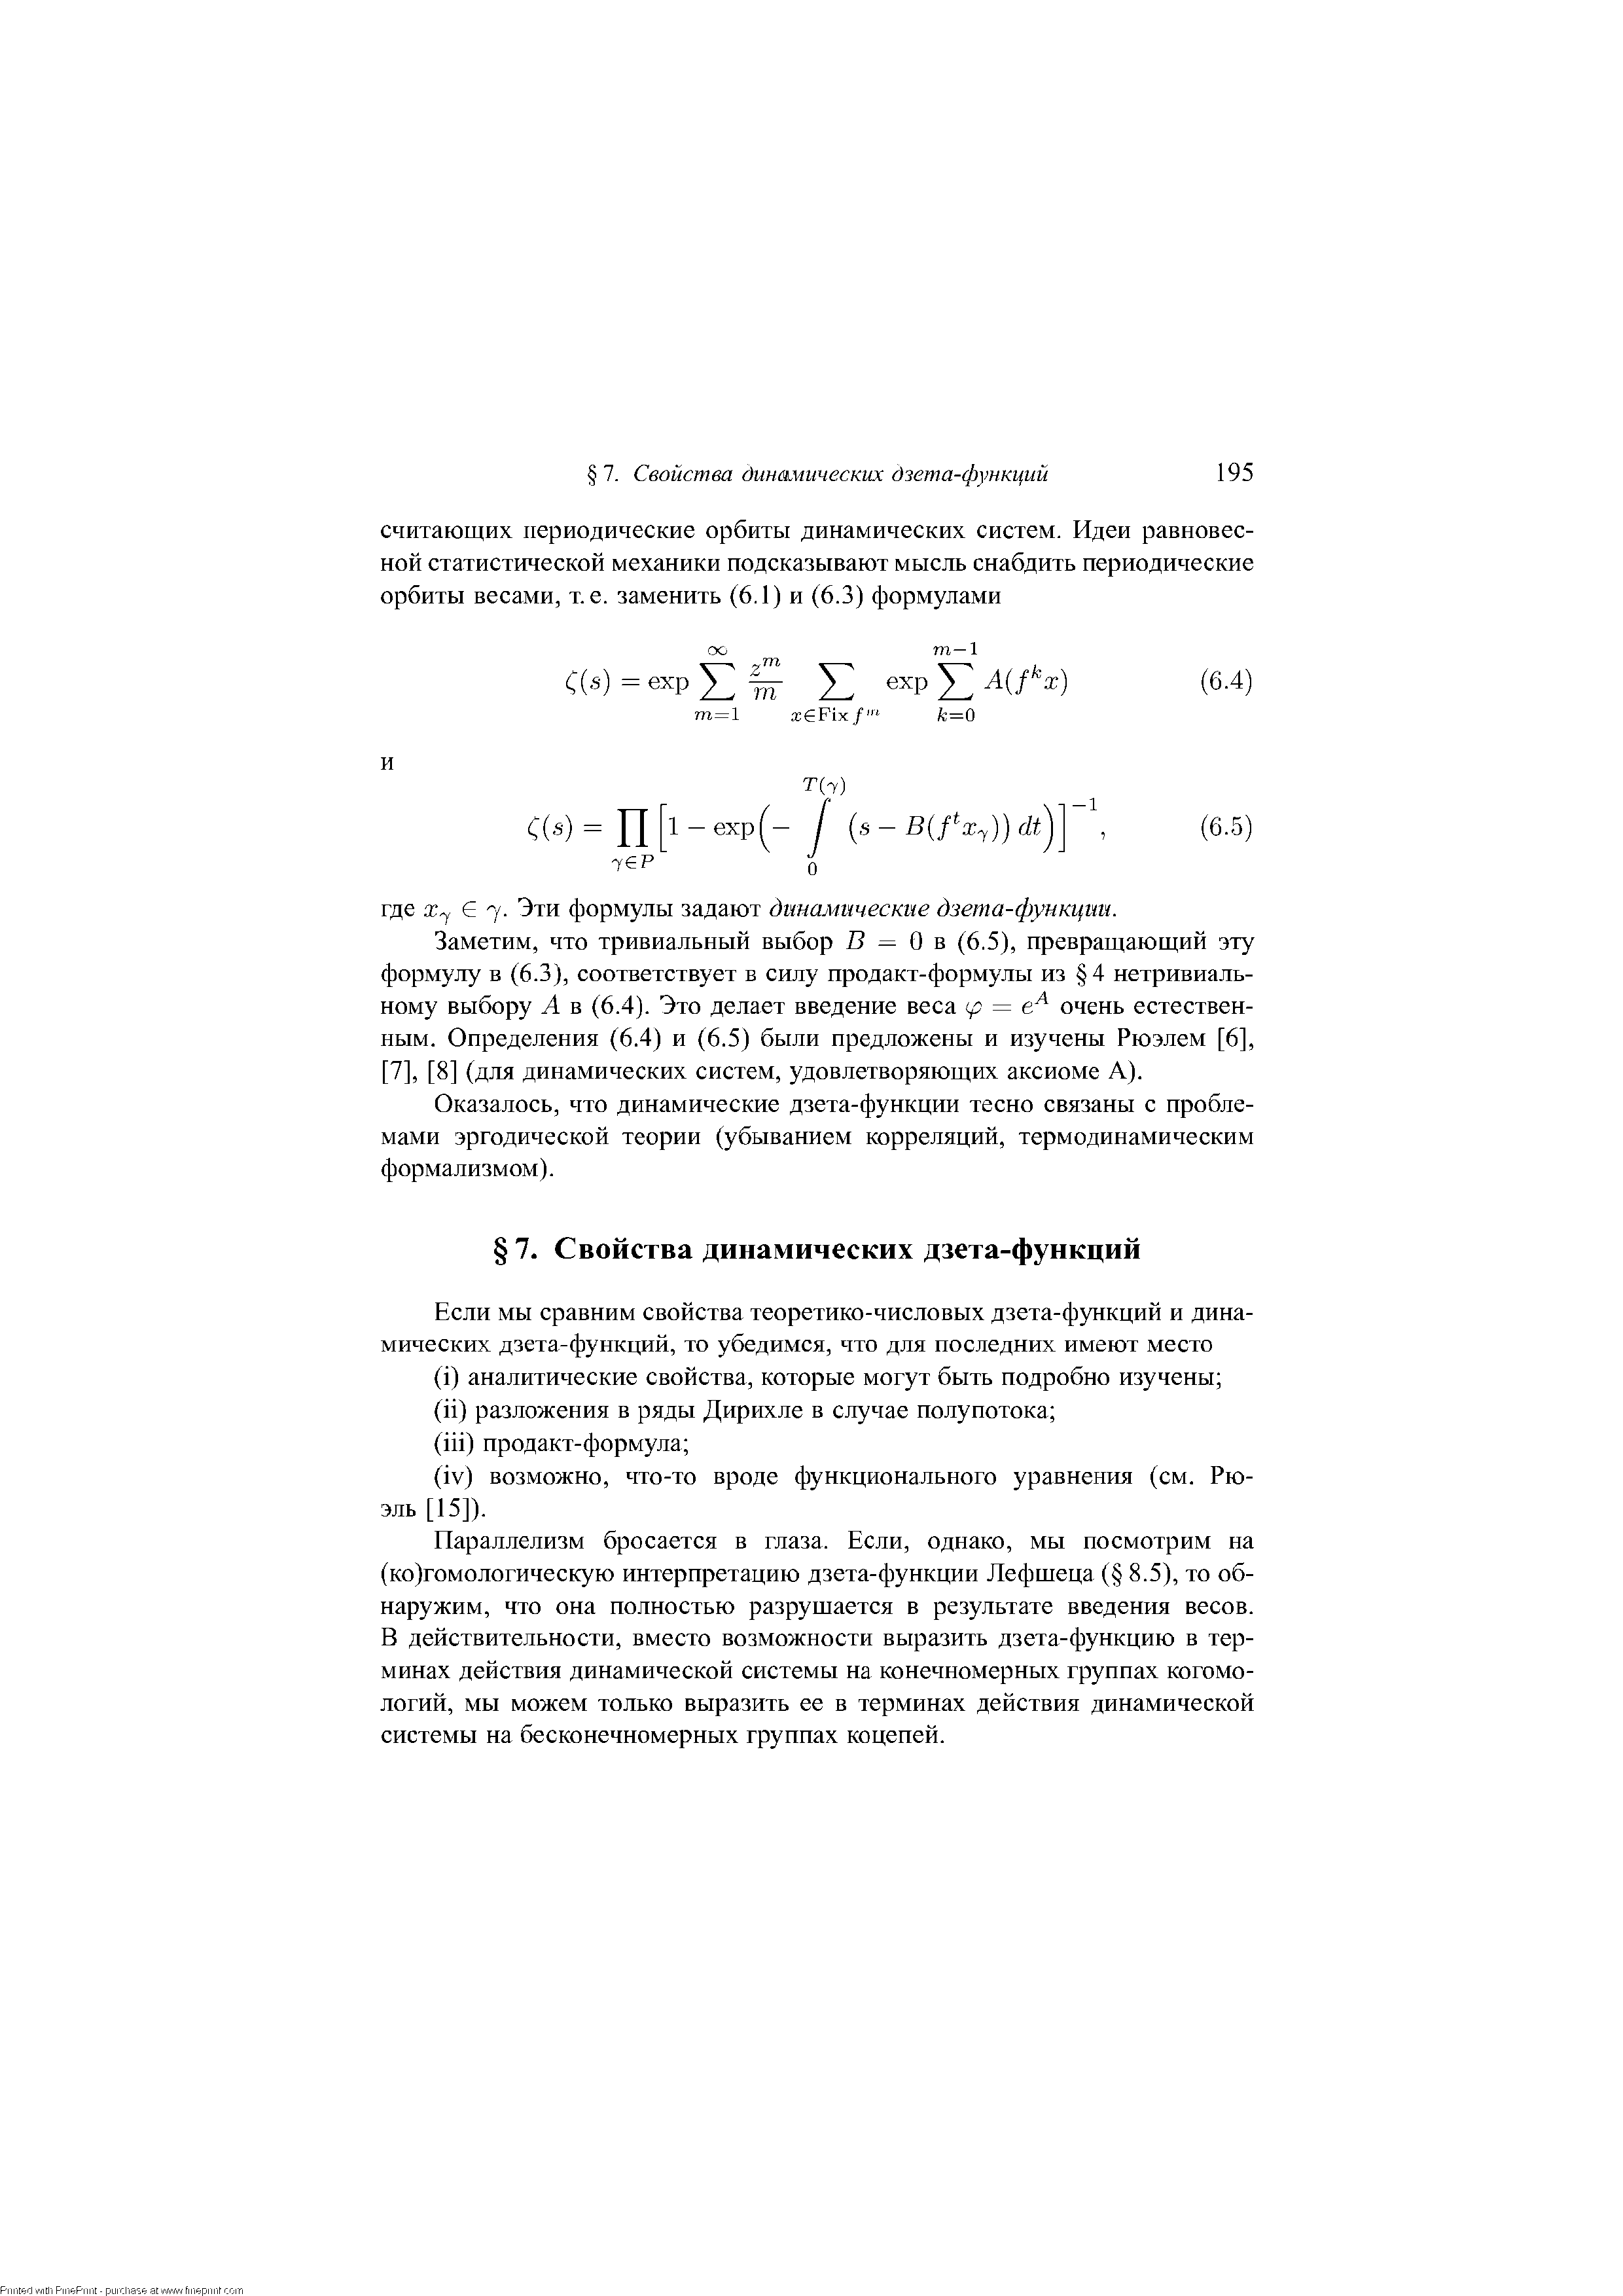 Заметим, что тривиальный выбор В = О в (6.5), превращающий эту формулу в (6.3), соответствует в силу продакт-формулы из 4 нетривиальному выбору А в (6.4). Это делает введение веса (р = очень естественным. Определения (6.4) и (6.5) были предложены и изучены Рюэлем [6], [7], [8] (для динамических систем, удовлетворяющих аксиоме А).